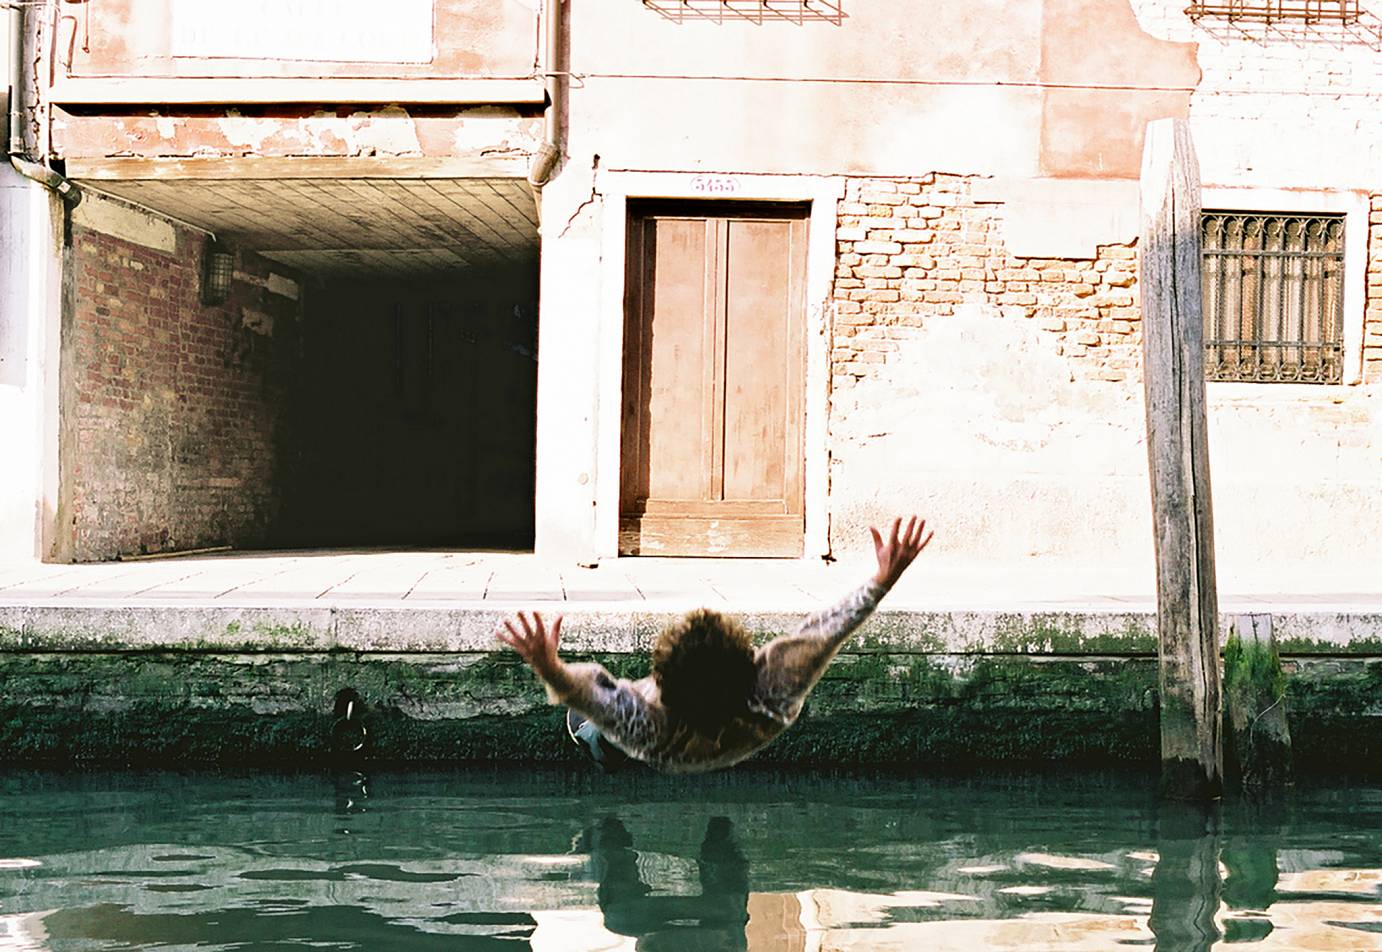 Gelatin: Performance - Nellanutella, 2001, Gelatin schwimmen im Kanal von Venedig